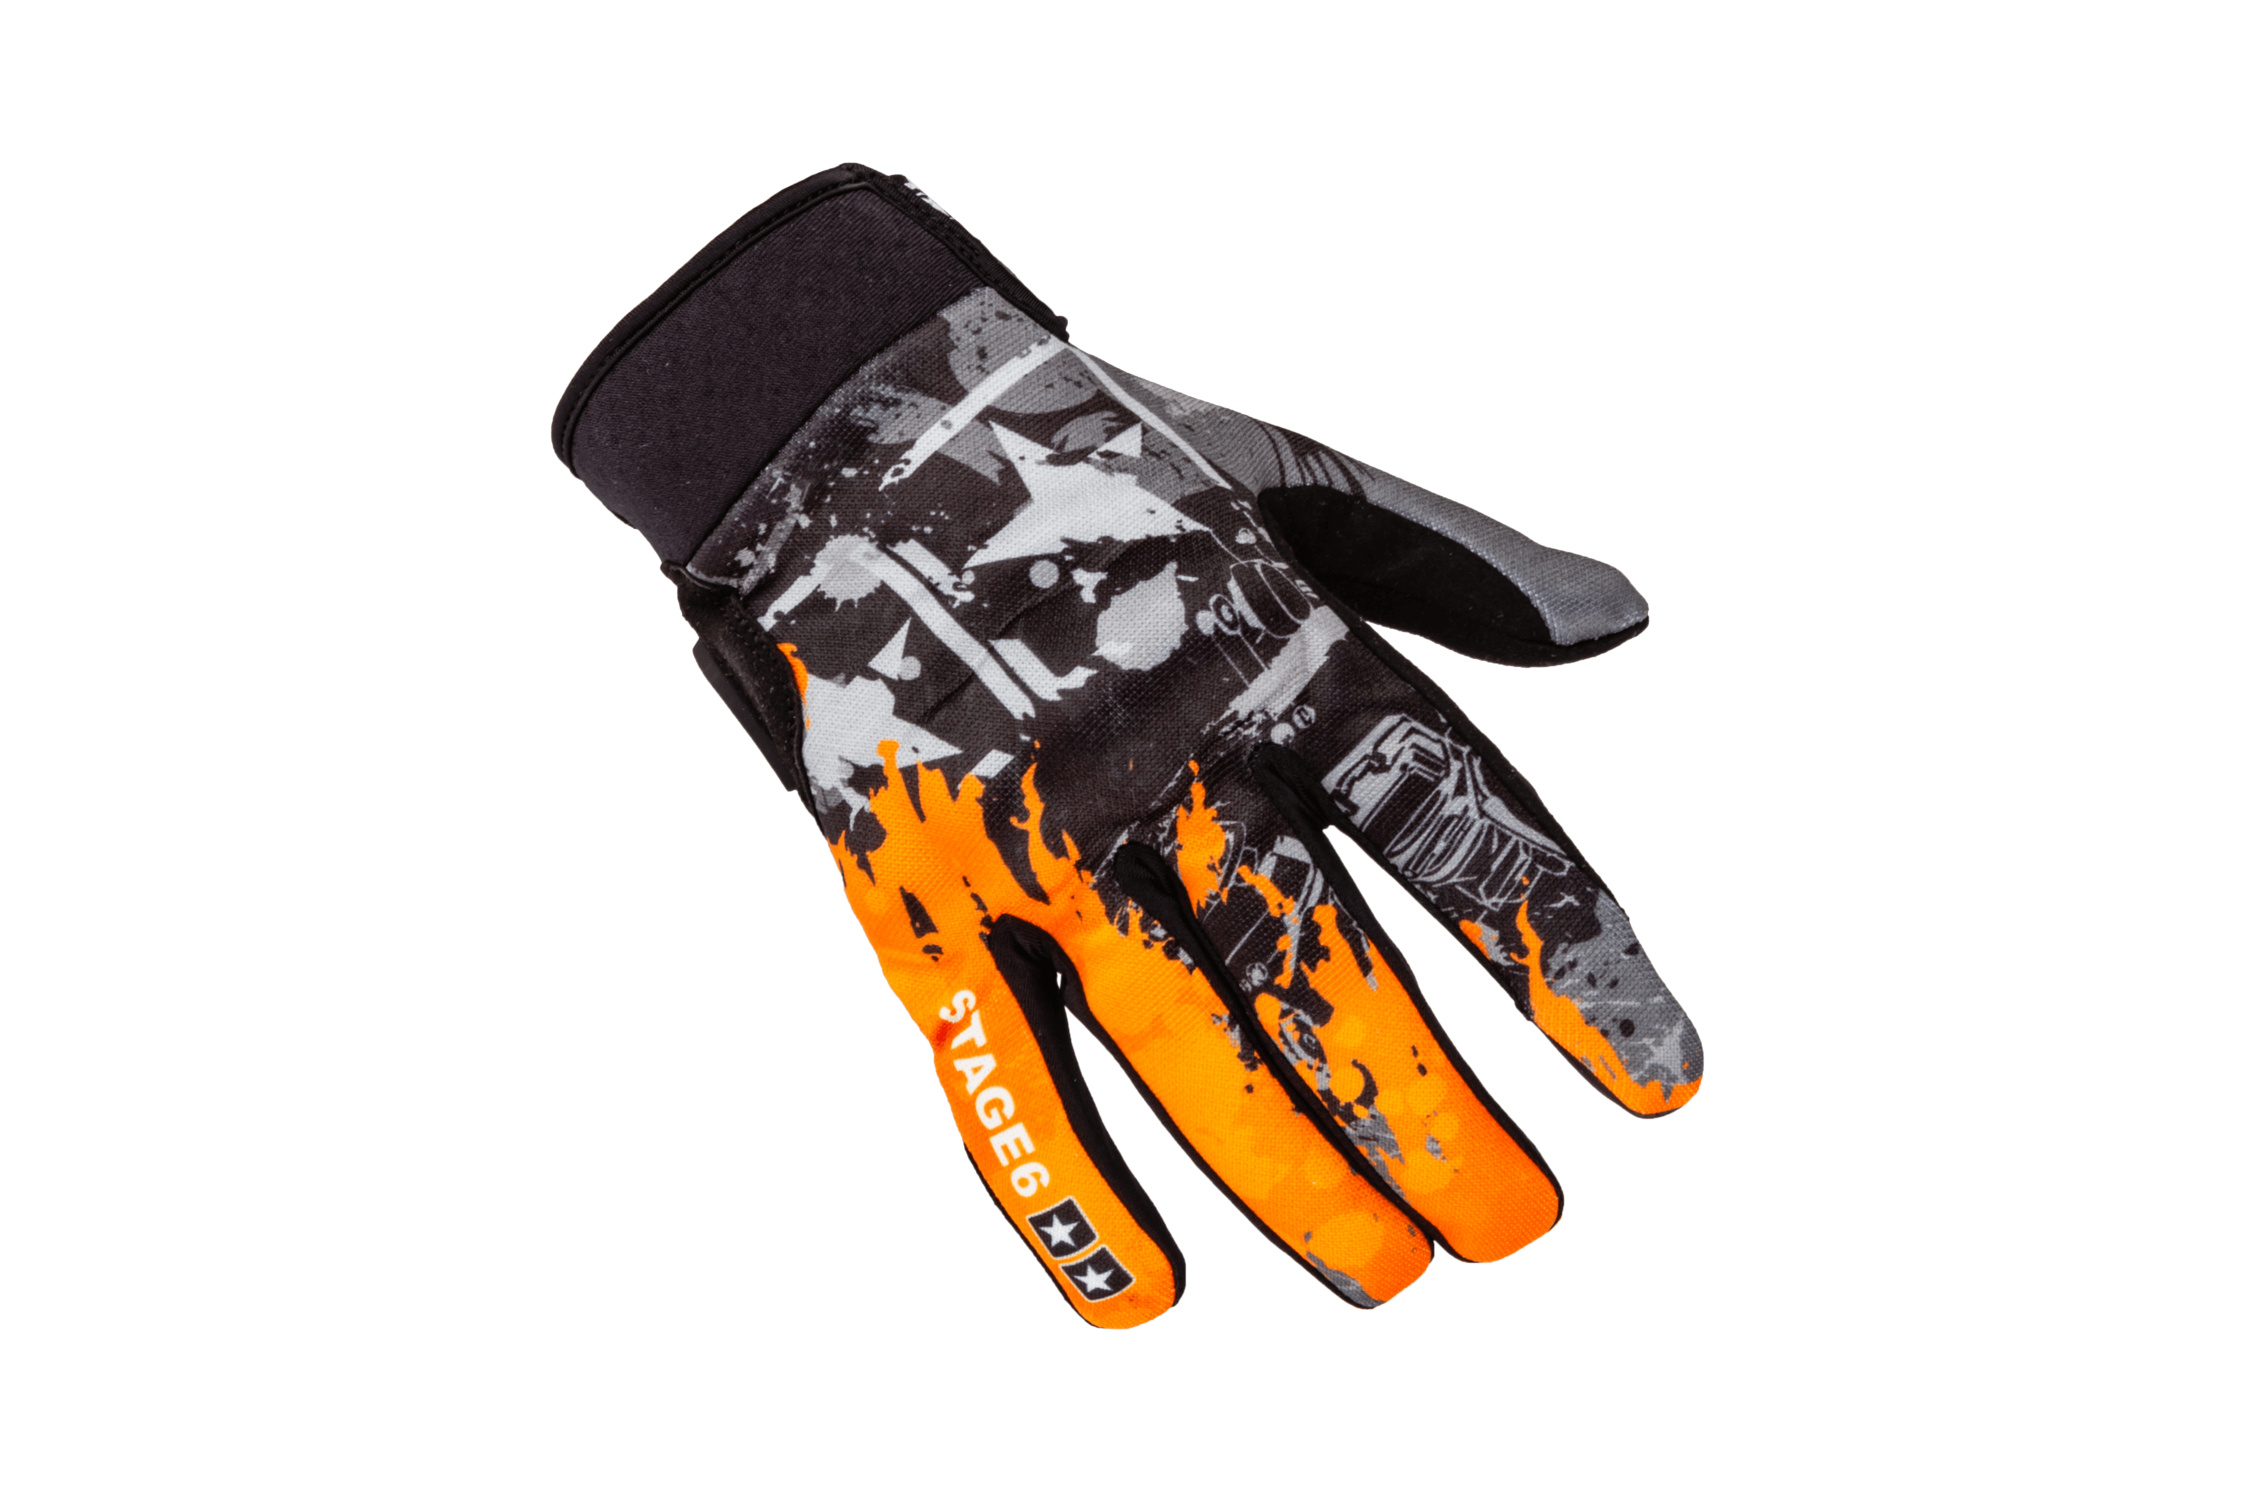 Des nouveaux gants moto homologués chez Stage6 - Blog Maxiscoot